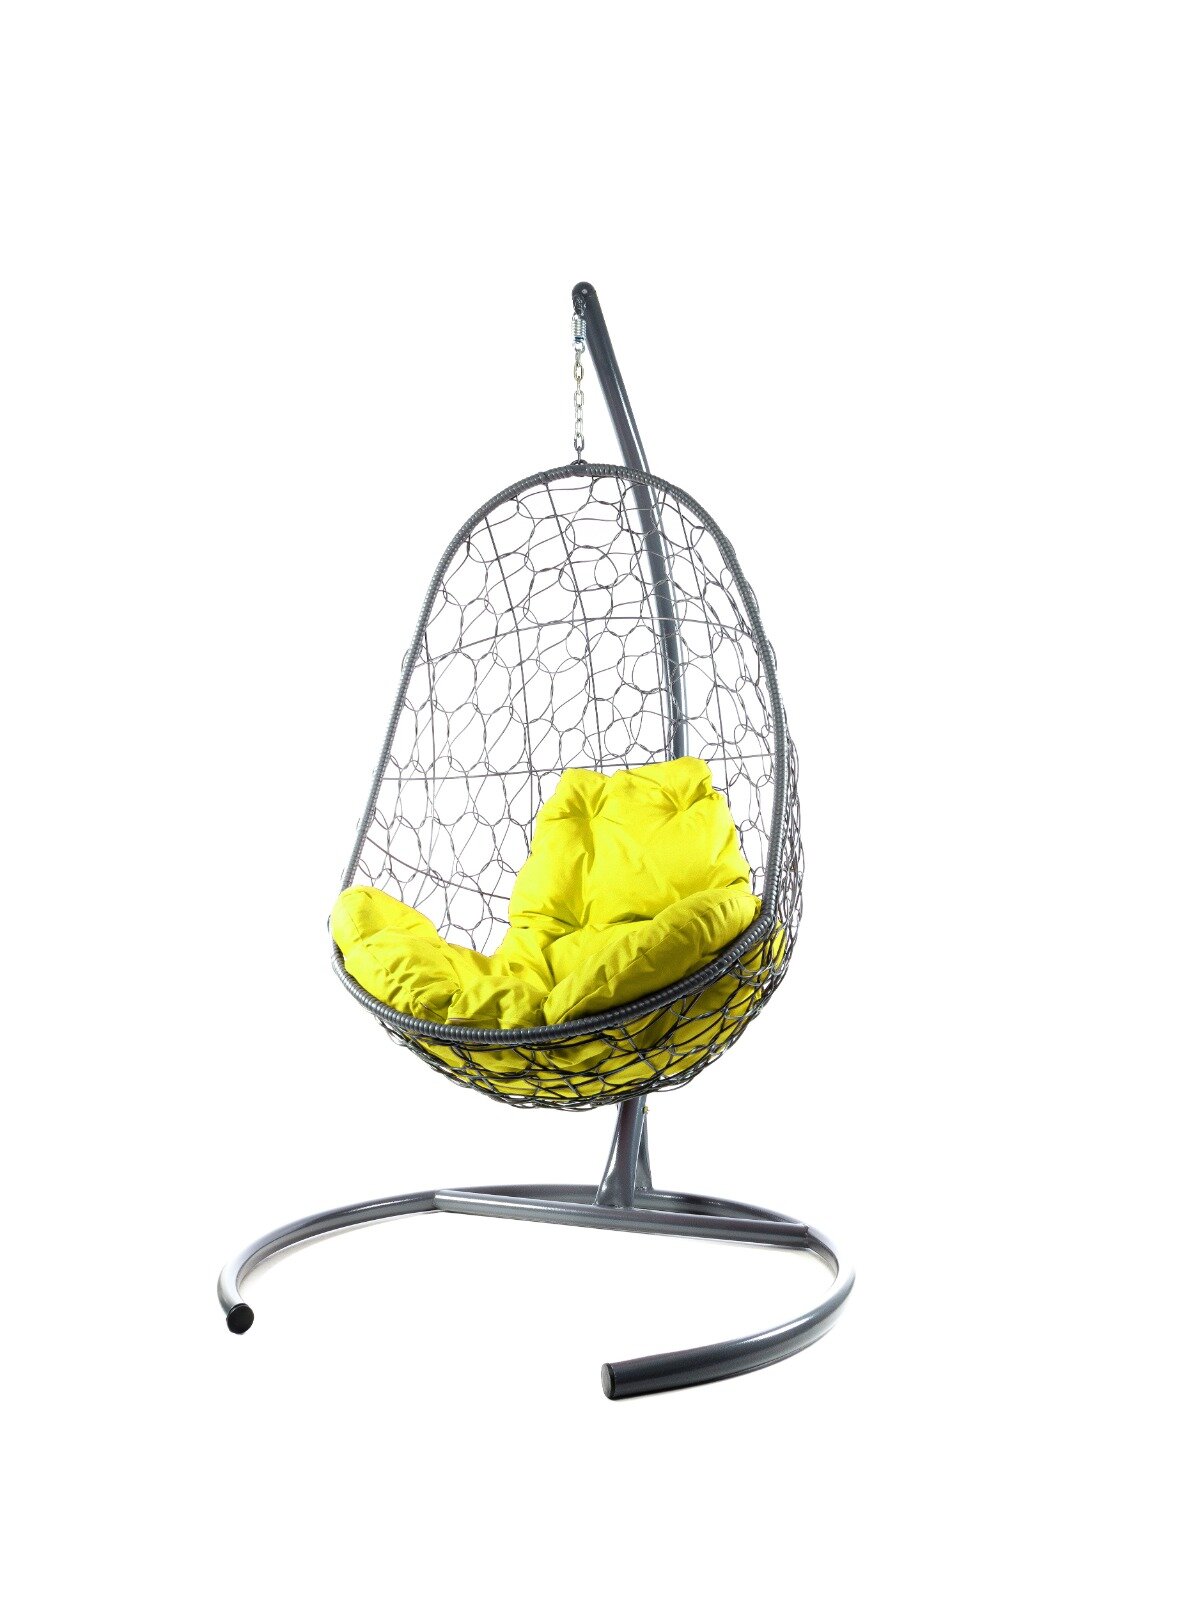 Подвесное кресло ротанг серое, желтая подушка